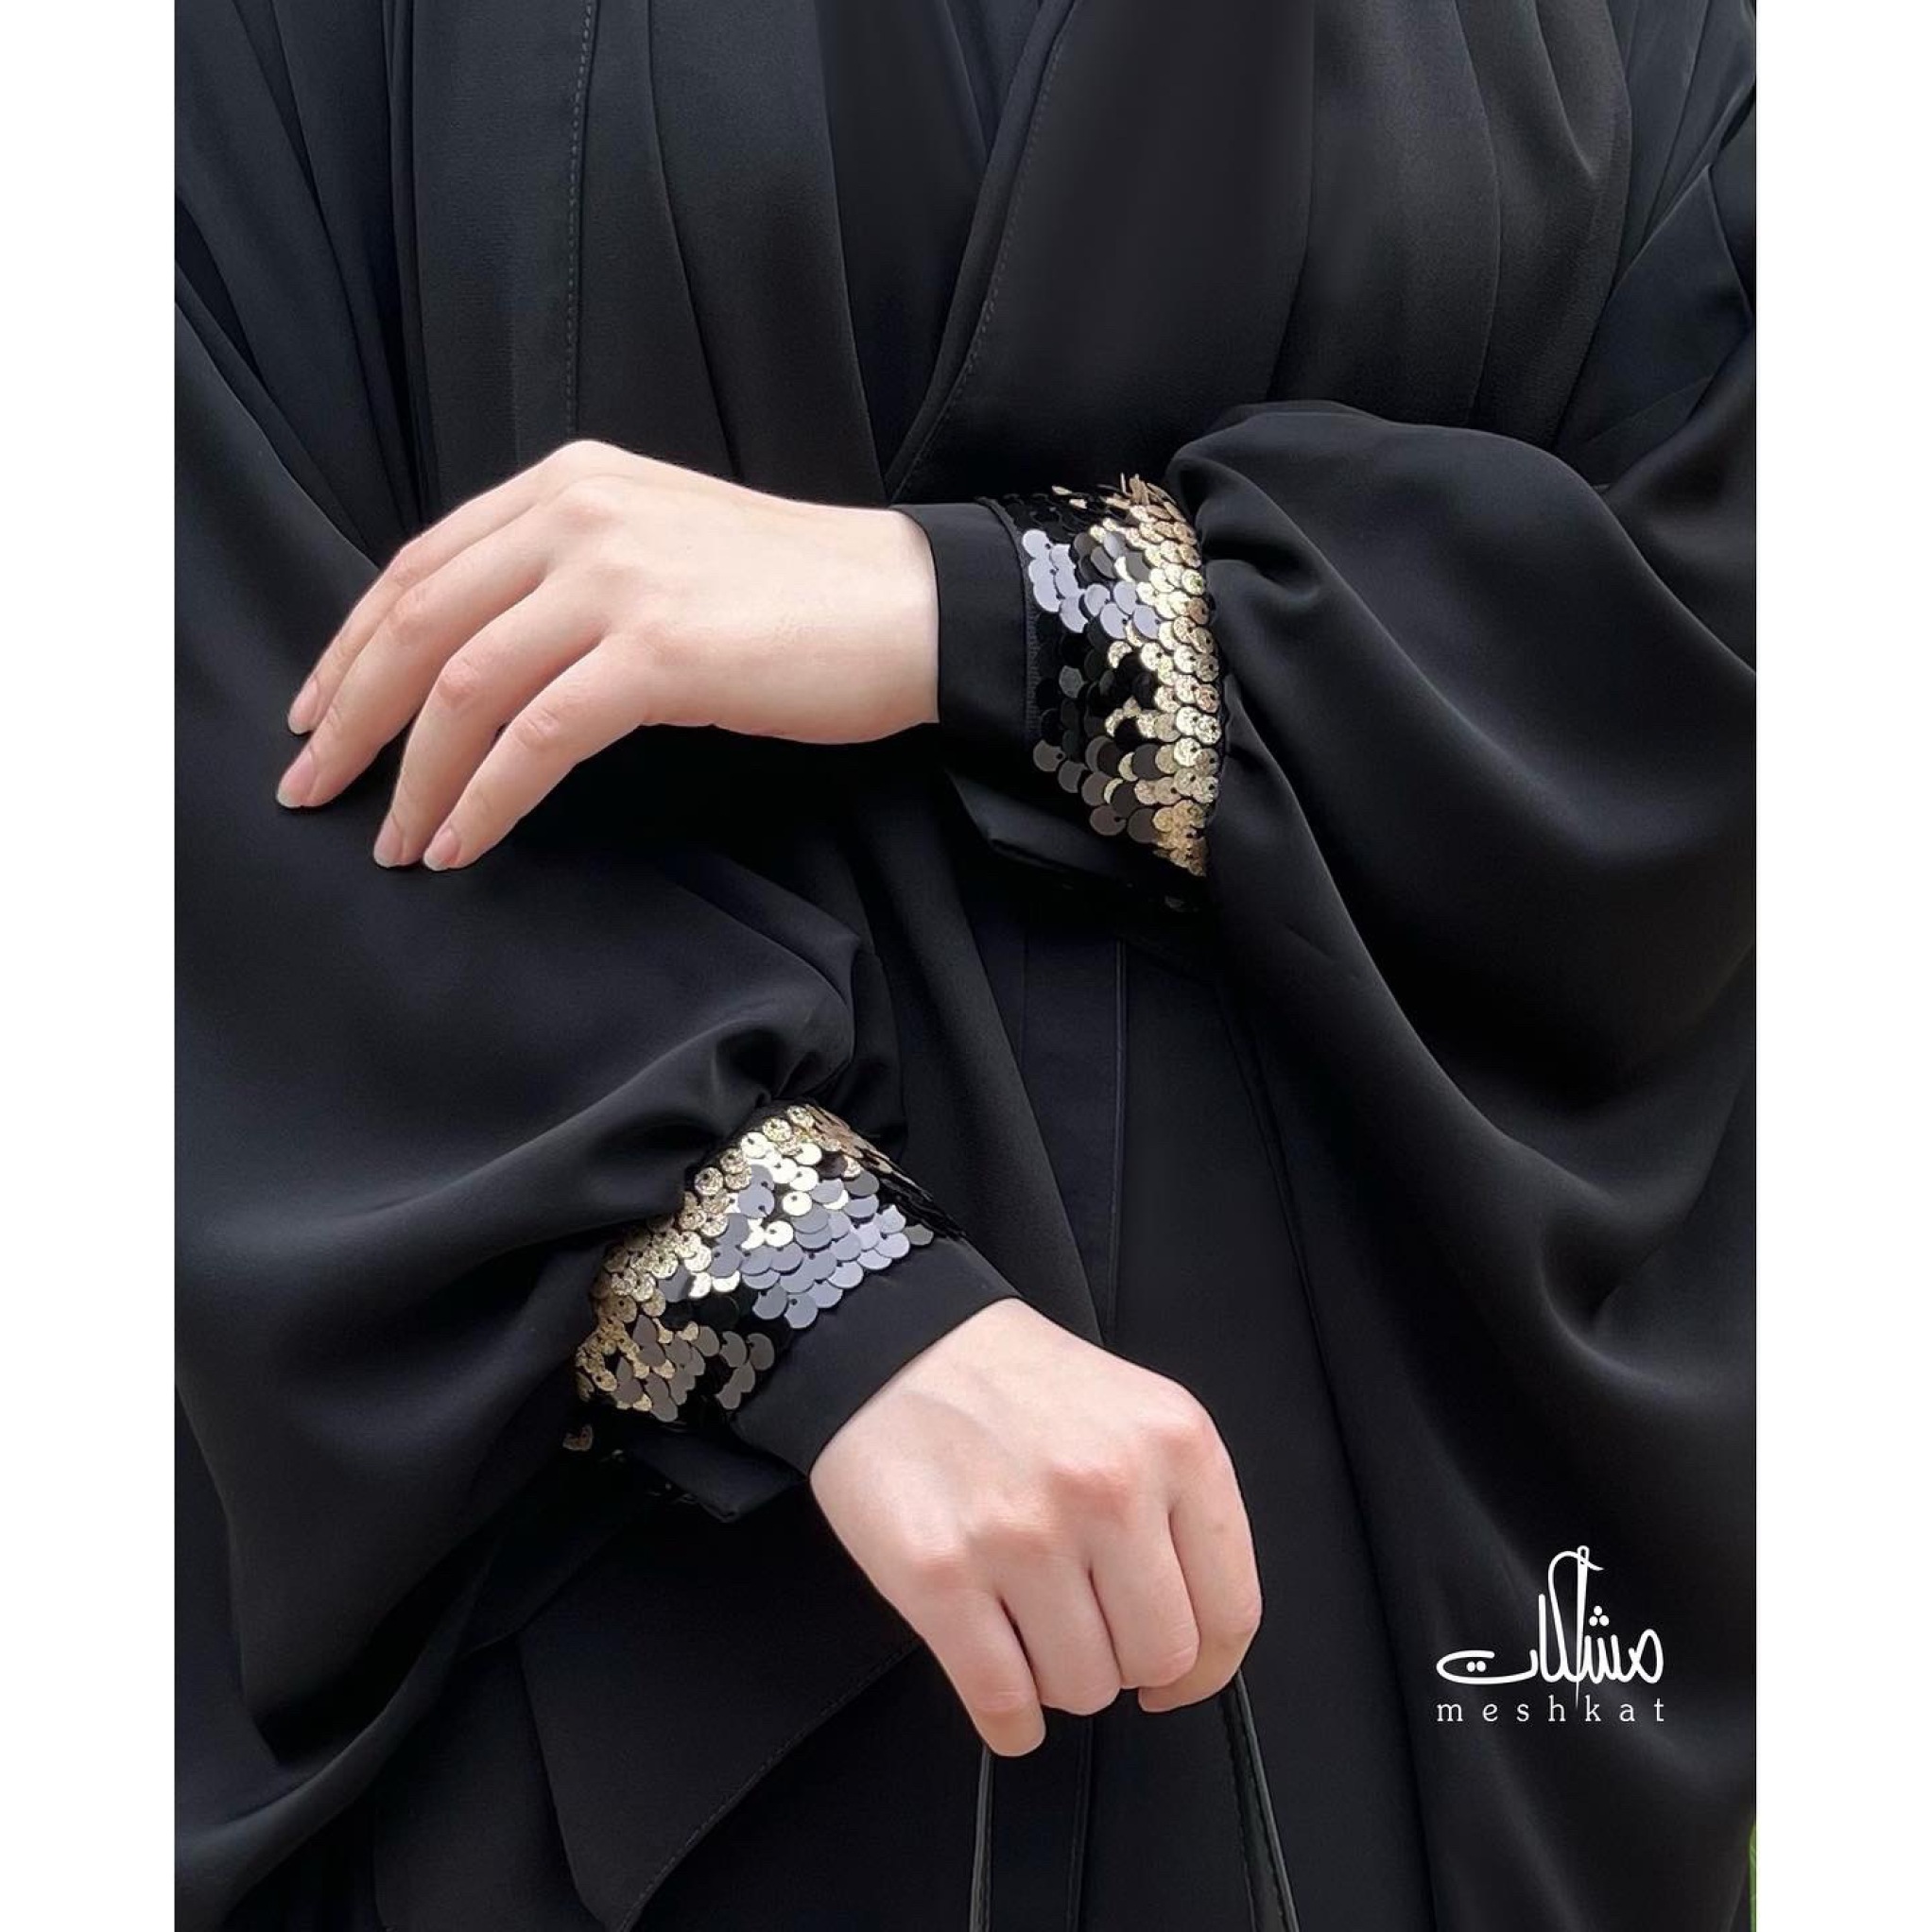  عبای بحرینی مدل مرواید با پارچه کرپ فلور از کالکشن تابستانه مشکات کالکشن رنگ مشکی 